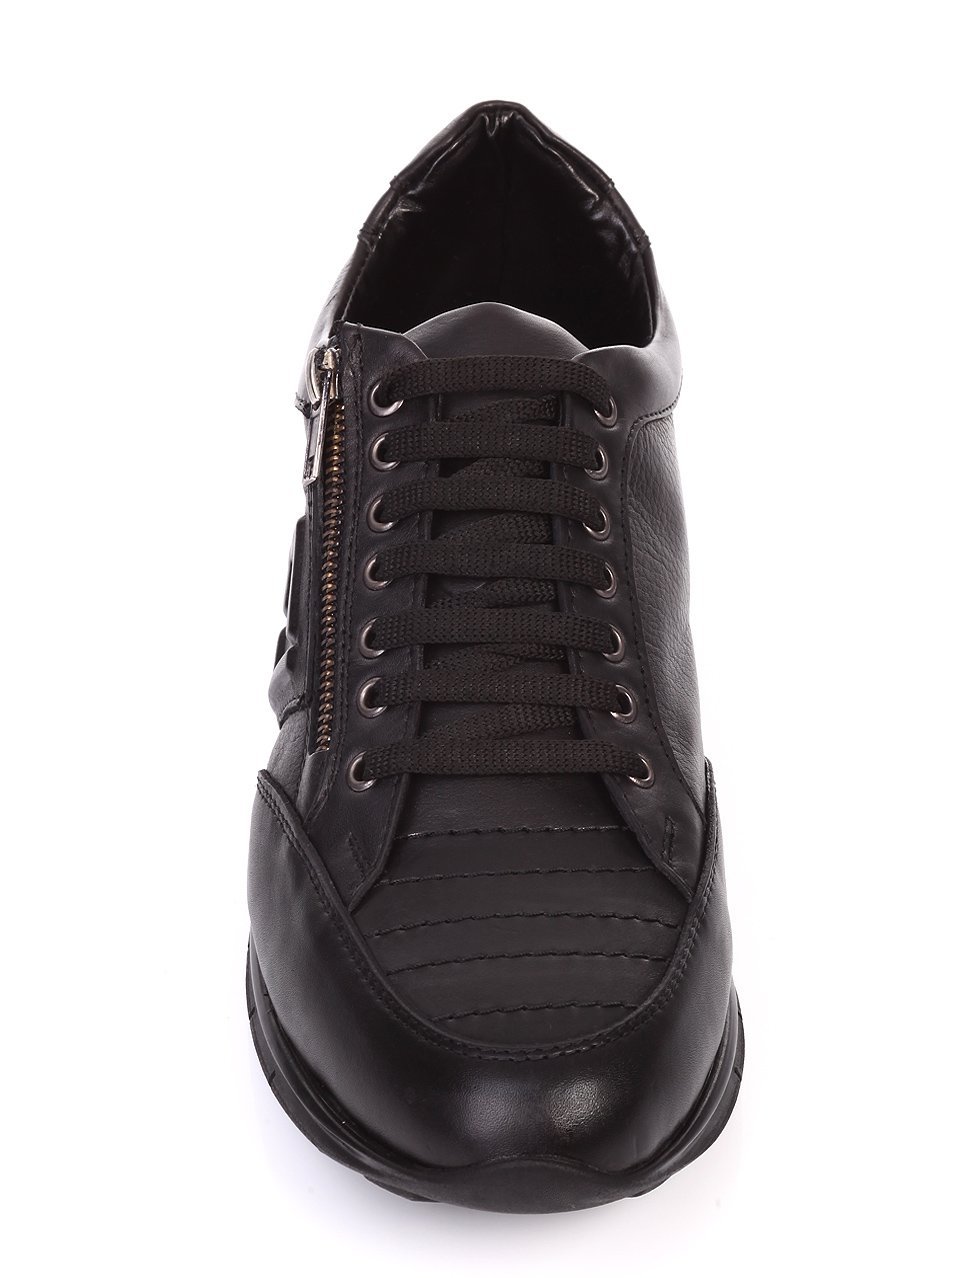 Ежедневни мъжки обувки от естествена кожа в черно 7AT-16865 black 